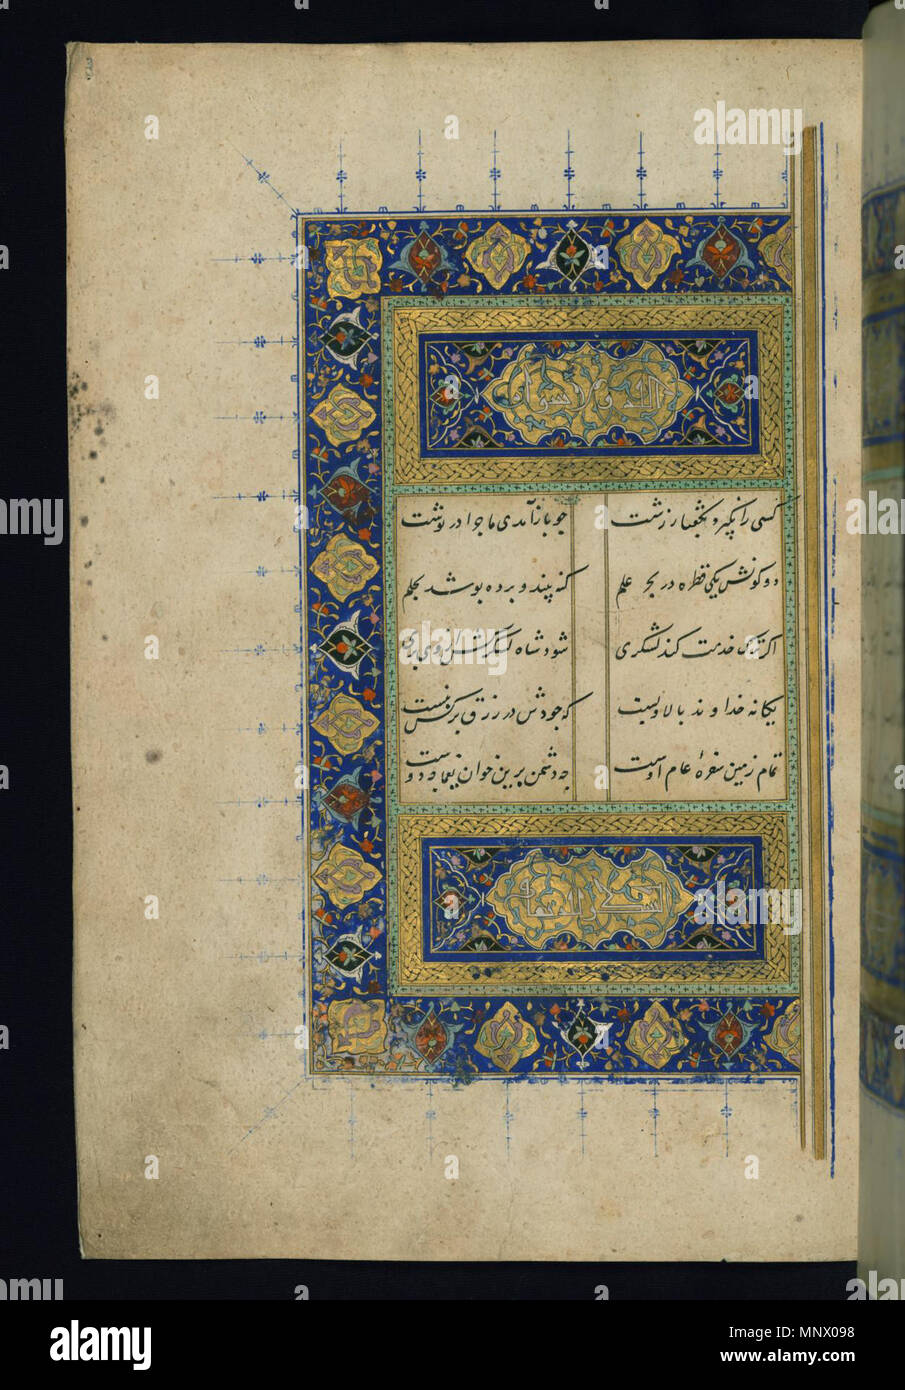 Double-page allumé Incipit . Anglais : Ce folio de Walters manuscrit W.620 est le côté gauche d'une double-page allumé incipit présentant le texte de la Bustan. Allah wa-la siwahu et al-Shukr li-llah ta'alá sont inscrits dans les cartouches dans un nouveau décor (abbasside) Cursive style.. . 9e siècle AH/AD 15ème siècle (période safavide (1501-1722)). 1082 Sa'di - Double-page allumé Incipit - Walters W6203A - Page complète Banque D'Images